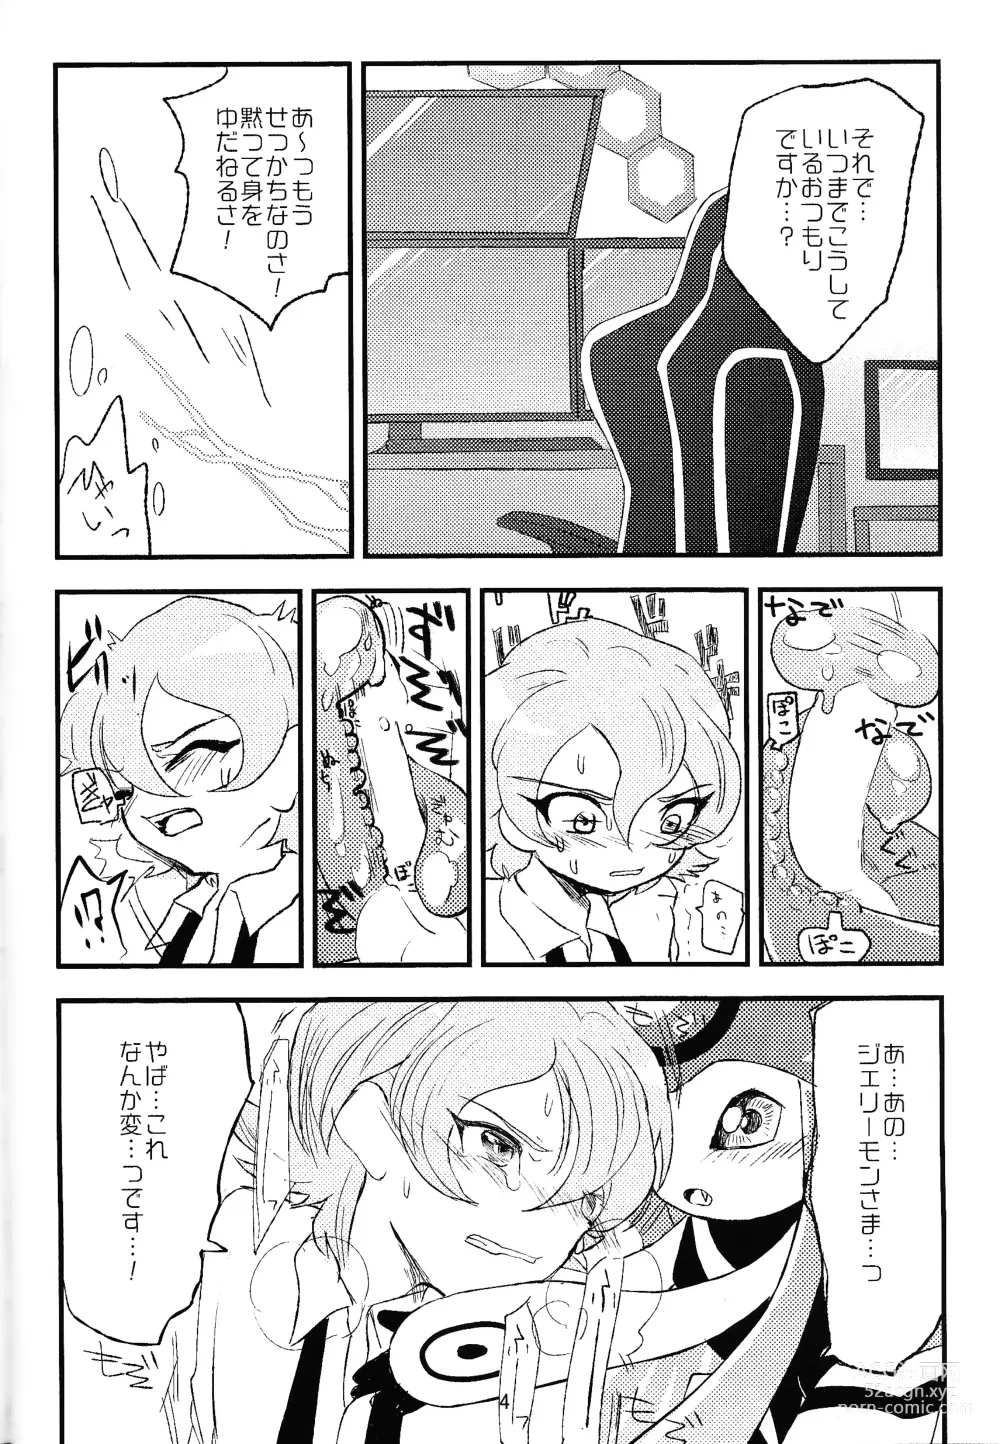 Page 5 of doujinshi Chusei kokoro ikusei gairon 1